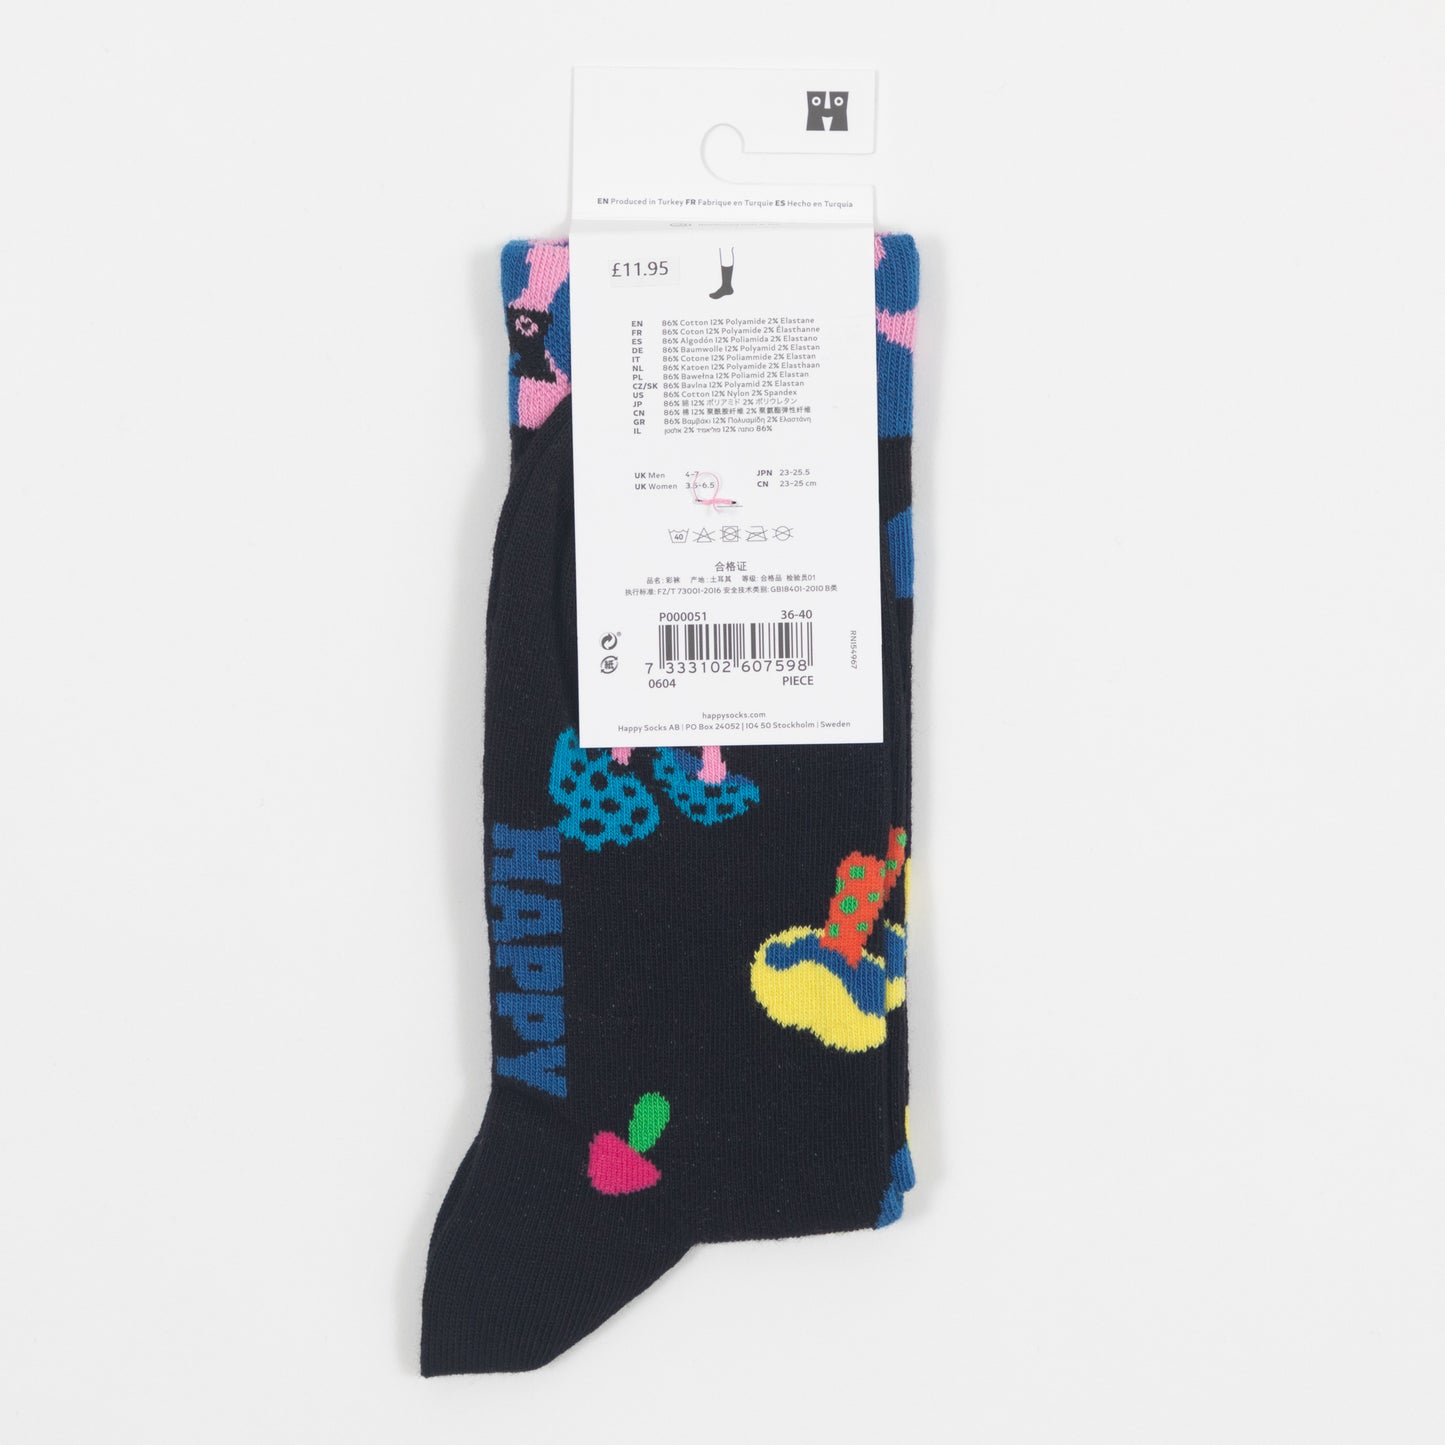 HAPPY SOCKS Mushroom Socks in BLACK & MULTI